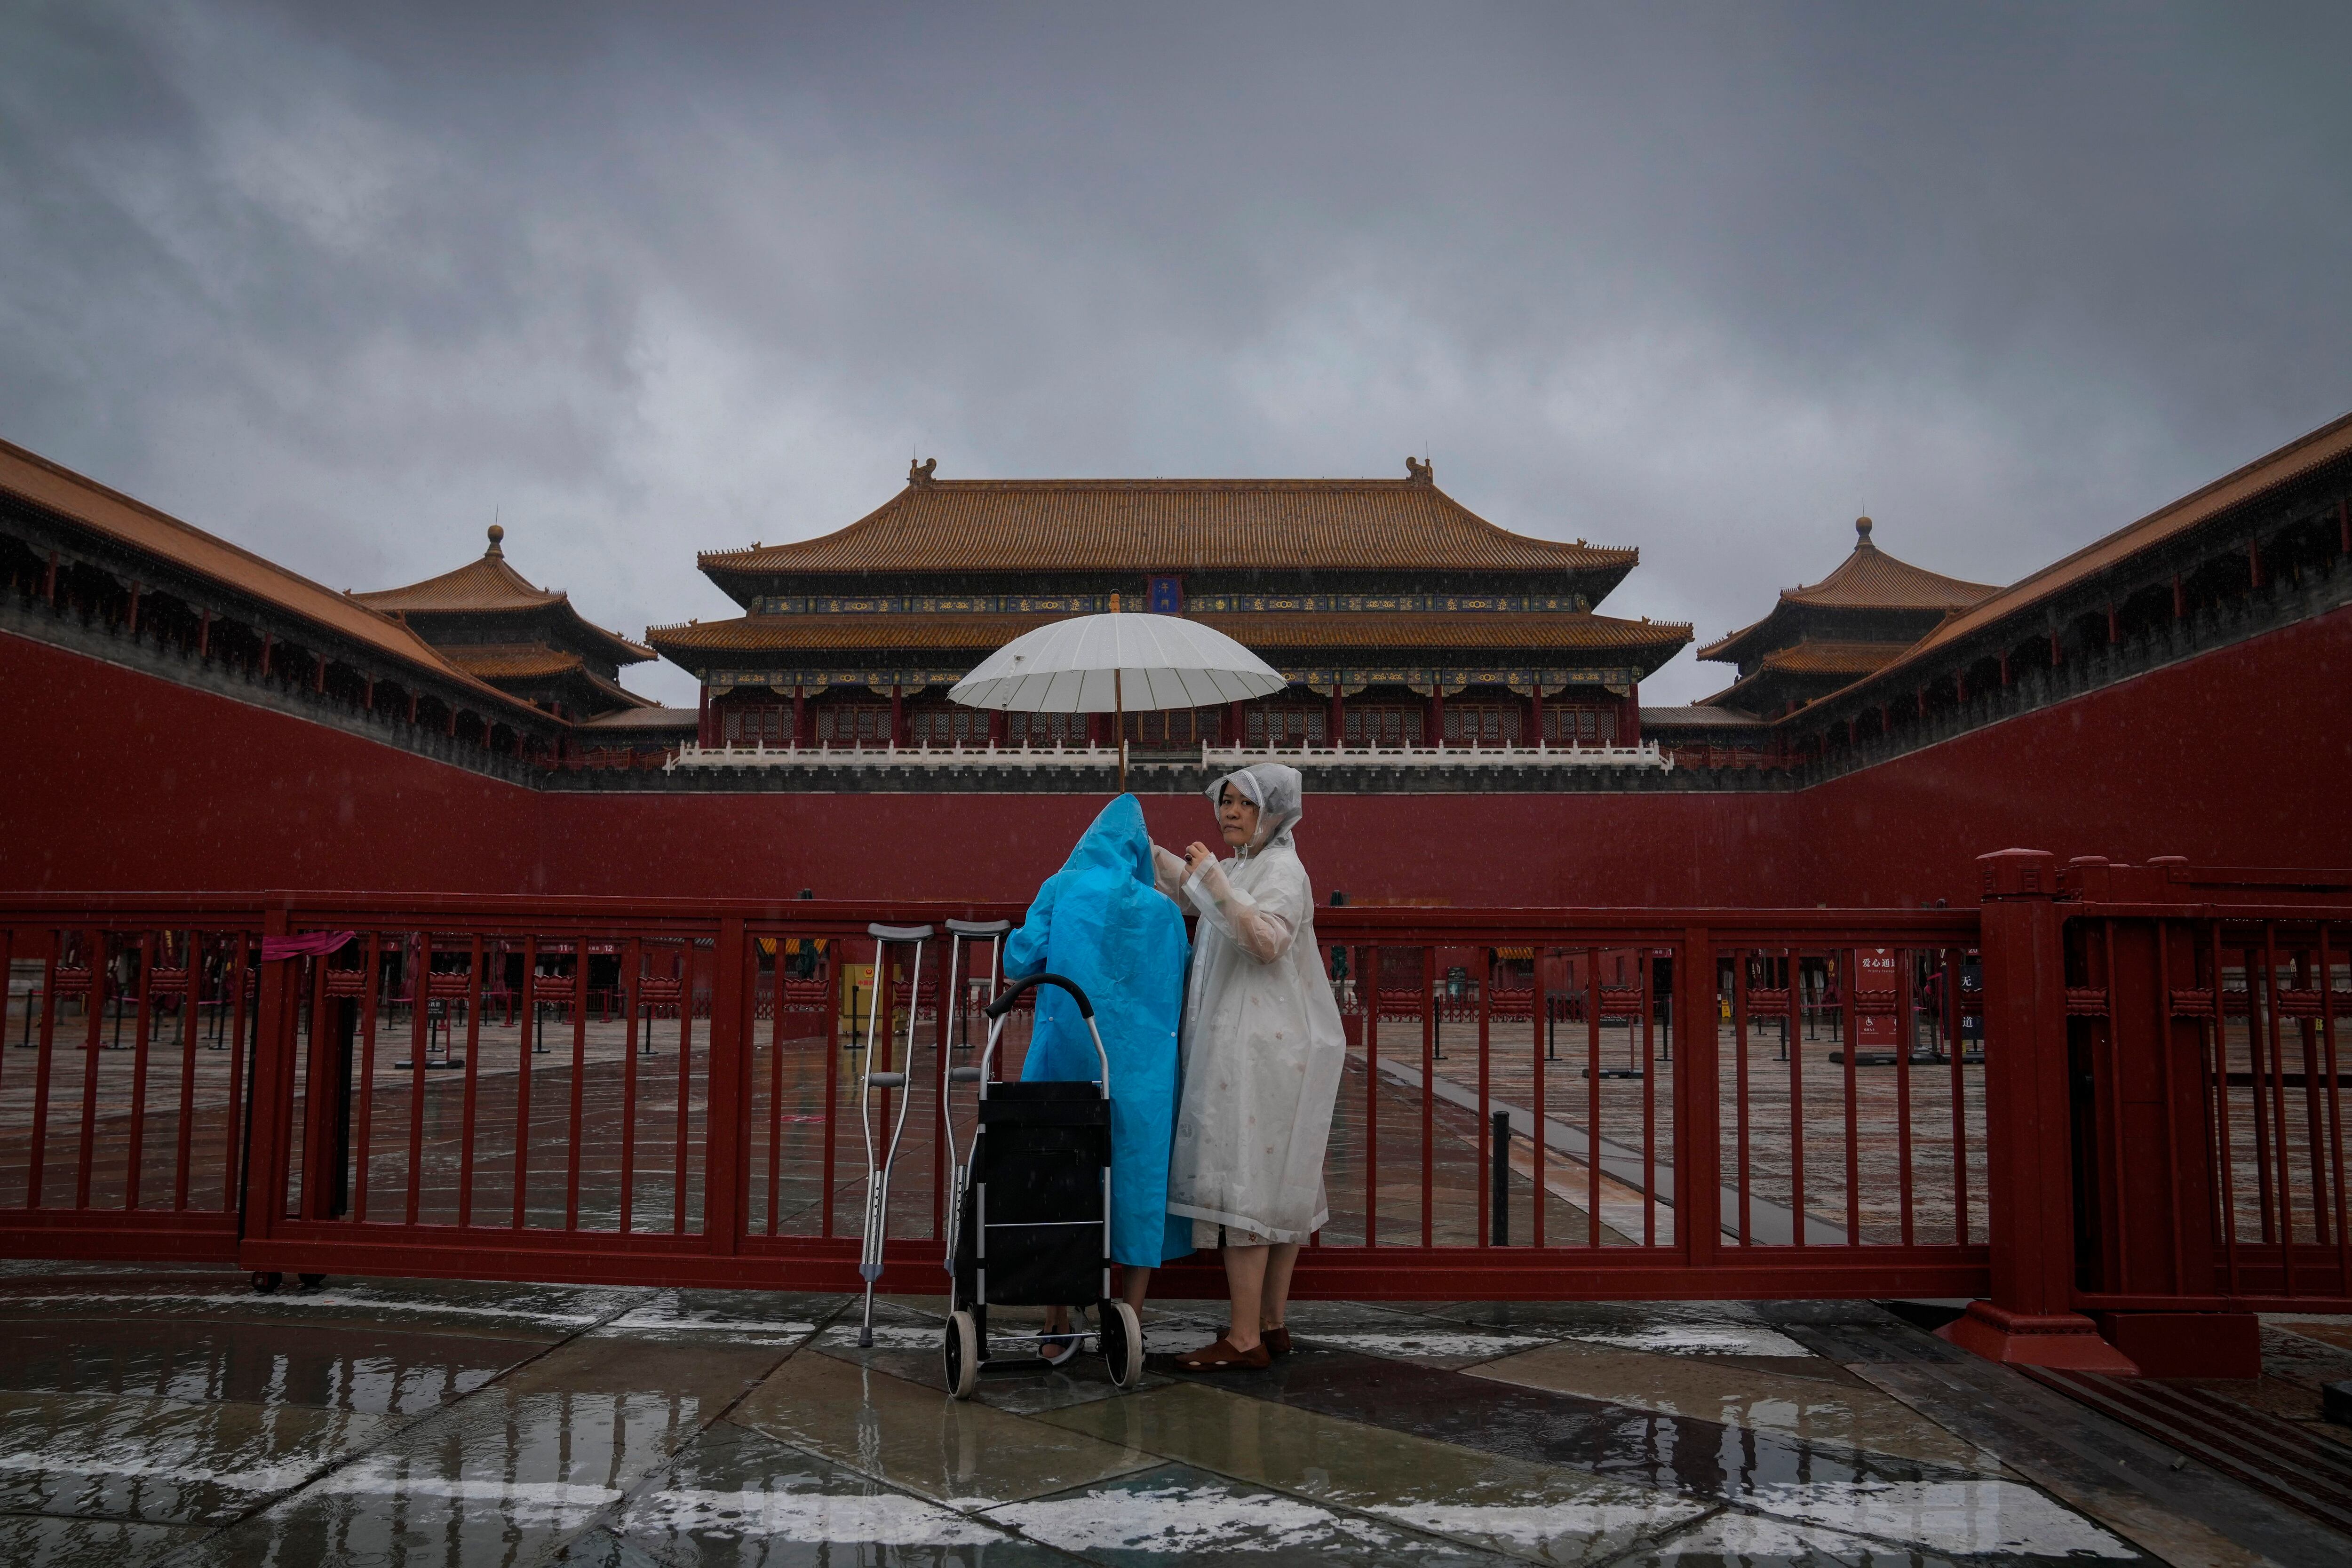 지난달 30일 비 내리는 베이징에서 중국인 관광객들이 자금성 입구 앞에 서 있다. 중국은 올해 초 코로나로 닫았던 국경을 다시 열었지만, 외국인 관광객들에게 외면 당하고 있다./AP연합뉴스